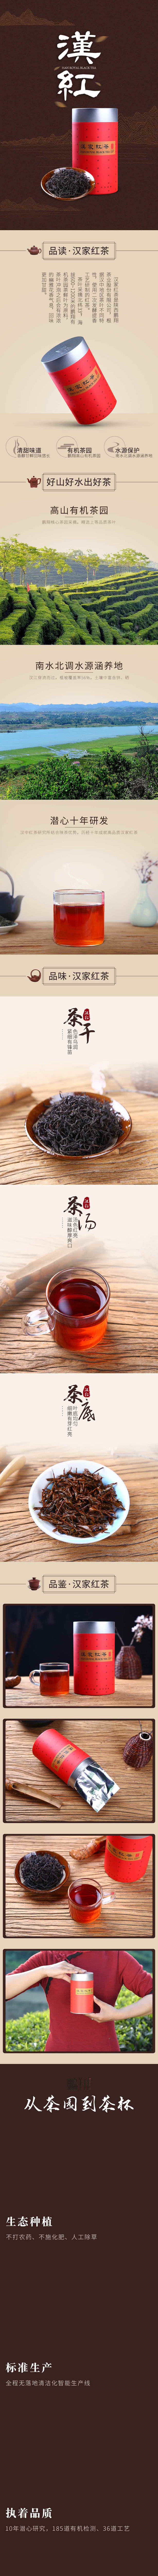 陕西汉中特产汉家红茶有机茶叶 工夫红茶茶叶散装罐装挚交50g